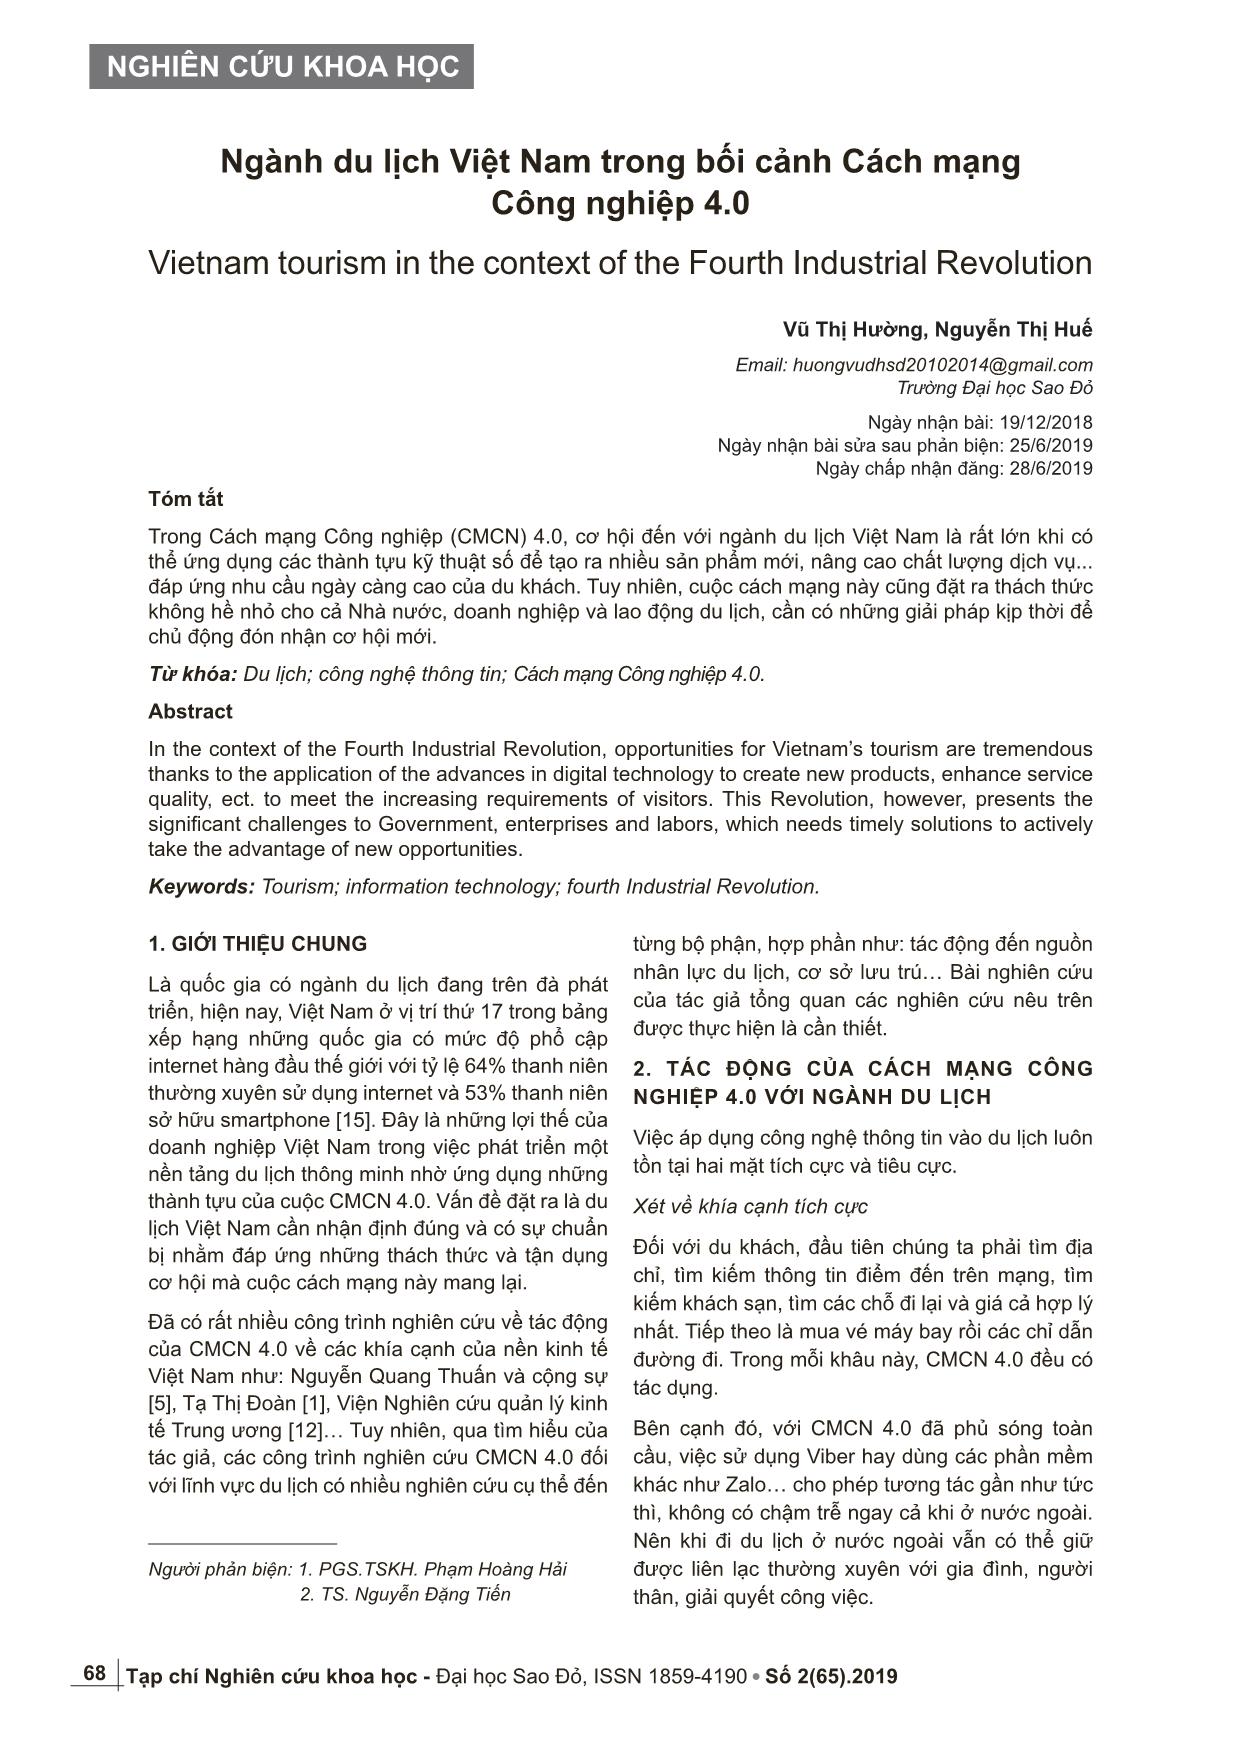 Ngành du lịch Việt Nam trong bối cảnh Cách mạng Công nghiệp 4.0 trang 1